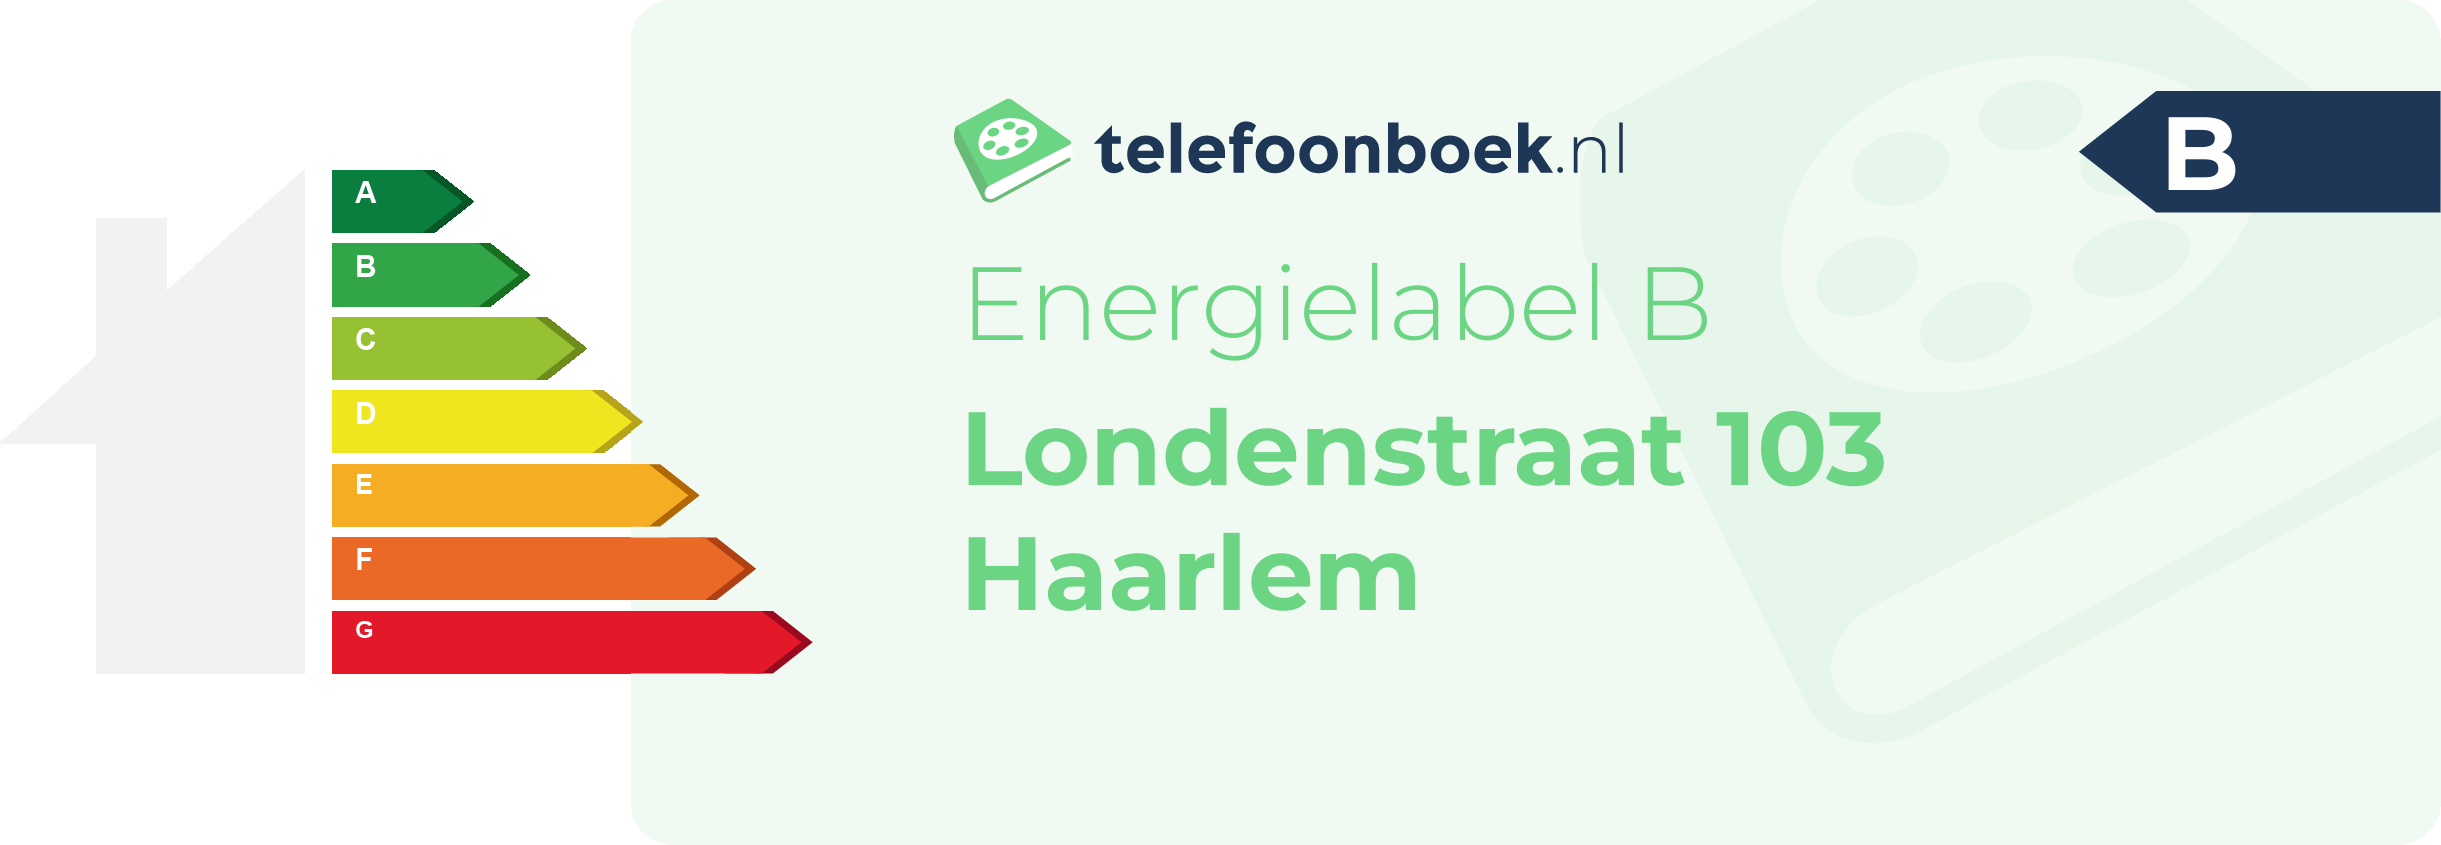 Energielabel Londenstraat 103 Haarlem